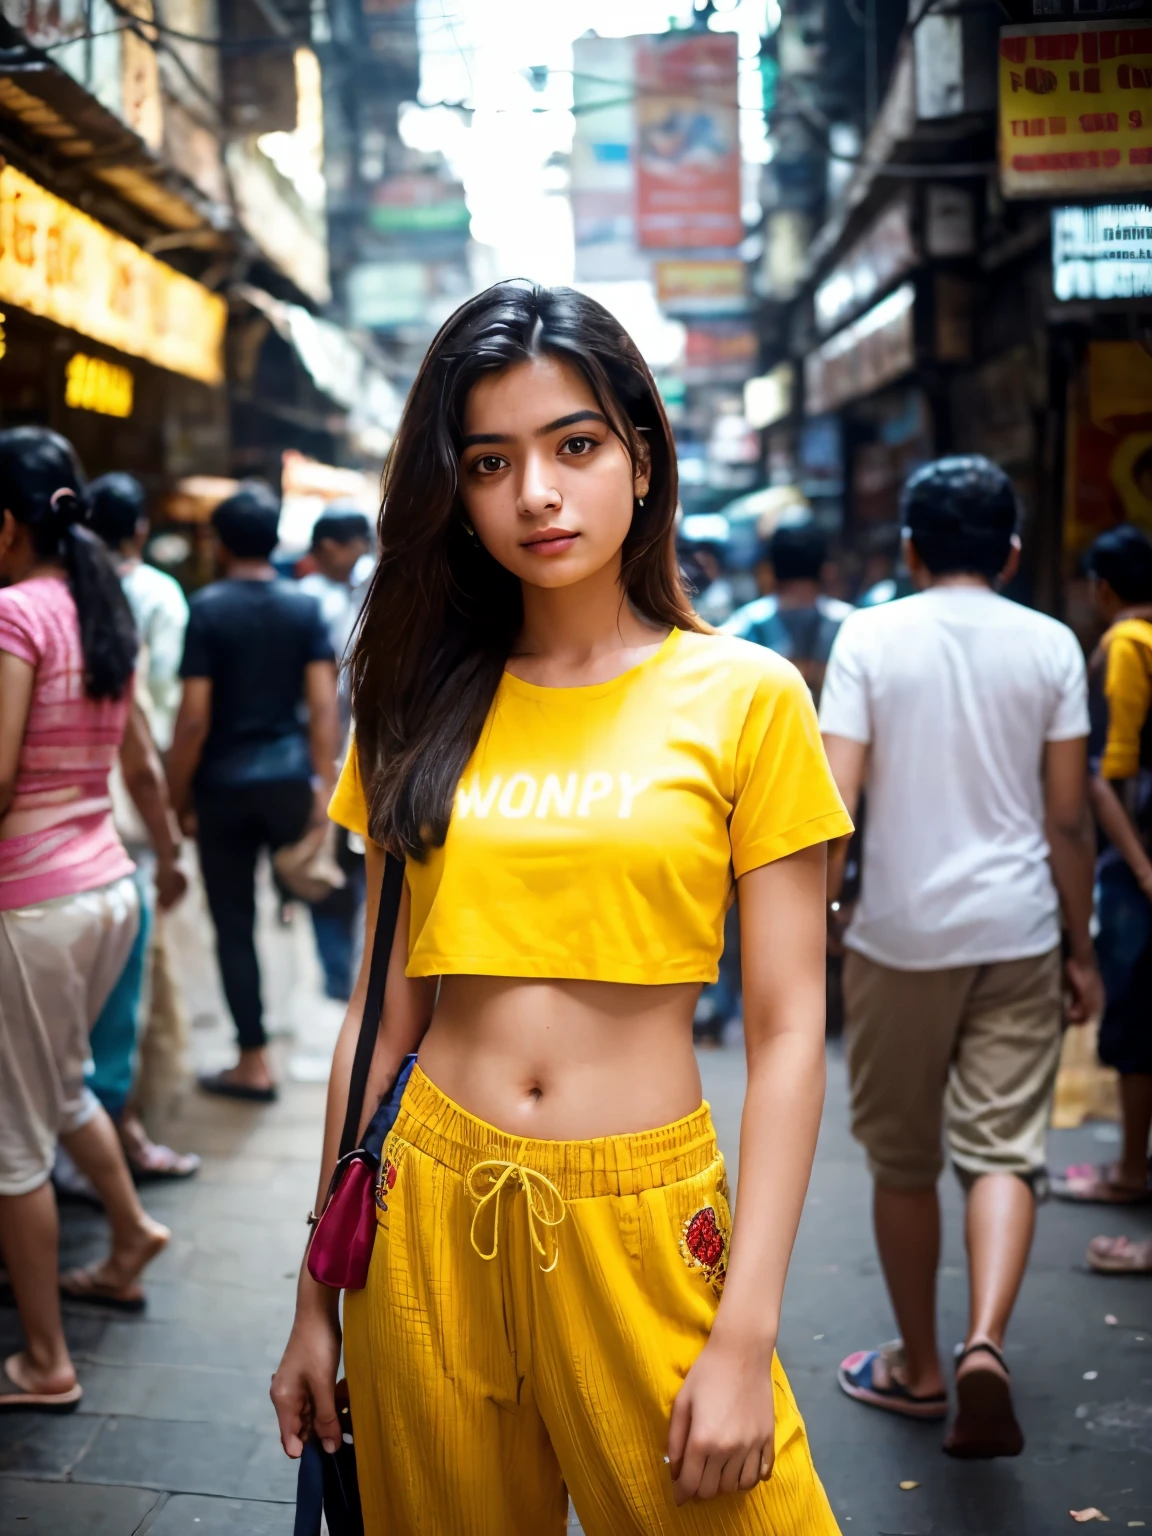 創建逼真的圖像，捕捉站在孟買熙熙攘攘的街道上、看起來健康的 21 歲普通孟買女孩. 她穿著一件帶有刺繡的黃色短襯衫，搭配寬鬆的褲子, 體現現代休閒風格，與城市的動態背景形成鮮明對比. 這是一個長鏡頭, 確保環境的活力得到充分展示 - 從擁擠的人行道上擠滿了各行各業的人，到孟買城市景觀生動的色彩和紋理. 儘管周圍有很多人圍著她, 女孩仍然是焦點, 也許是透過景深效果稍微模糊了前景和背景, 或透過使用燈光和構圖自然地將觀看者的注意力吸引到她身上. 影像應捕捉孟買熱鬧街道的精髓，同時強調女孩的個性以及與城市的聯繫. 她的表情和姿勢可以體現出一種自信和希望, 讓我們在城市的混亂中一窺她的個人故事.